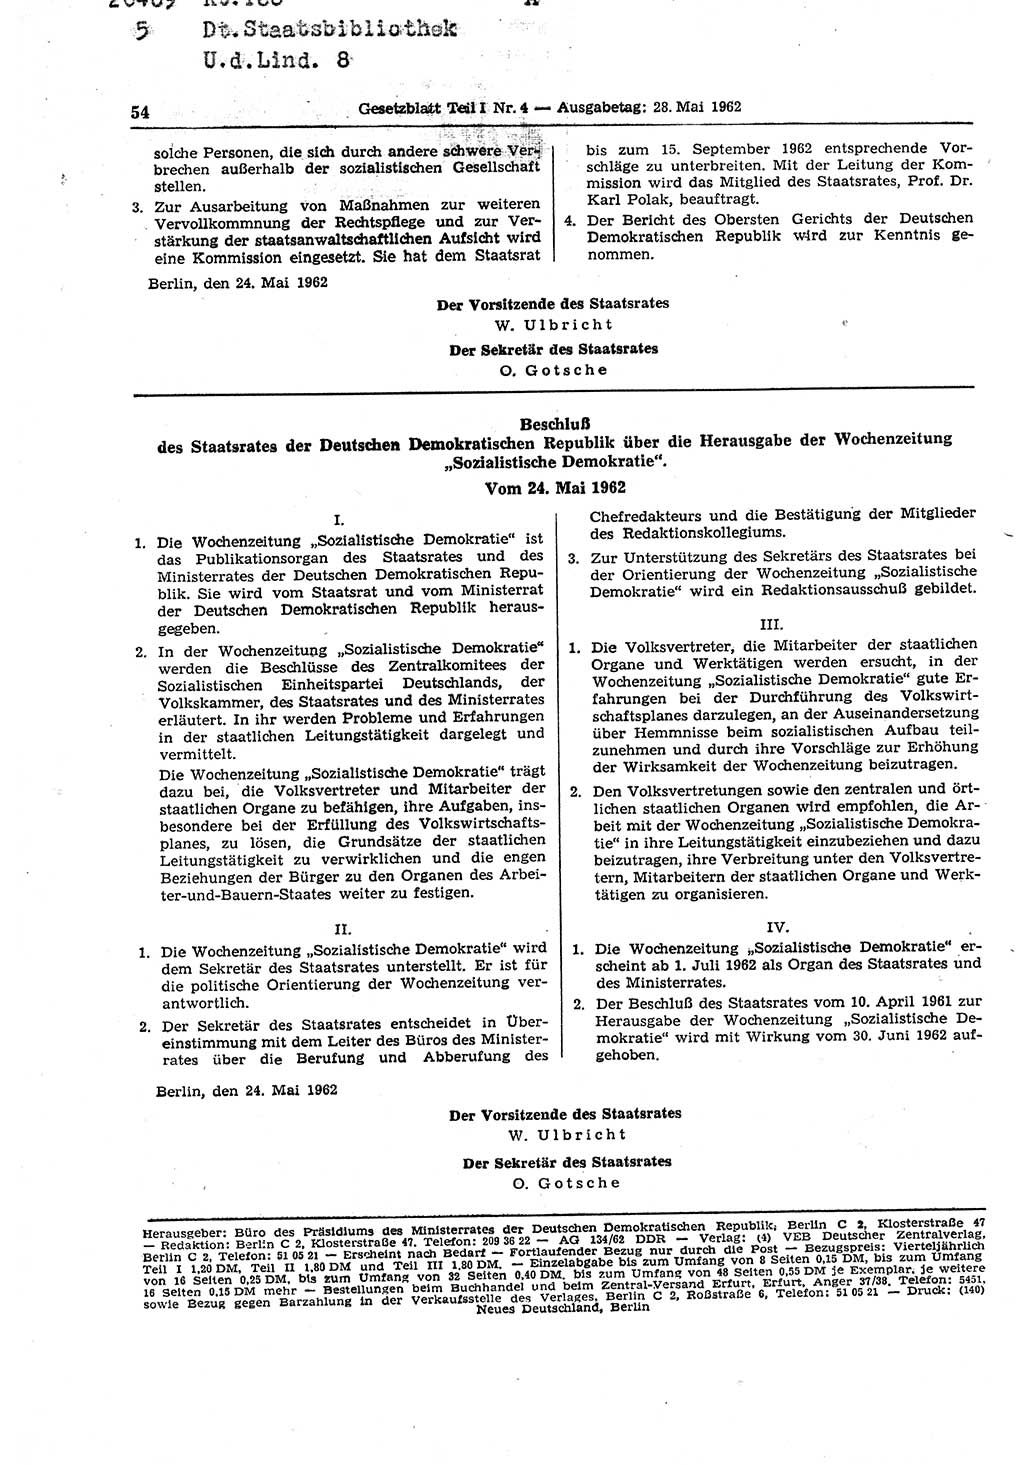 Gesetzblatt (GBl.) der Deutschen Demokratischen Republik (DDR) Teil â… 1962, Seite 54 (GBl. DDR â… 1962, S. 54)